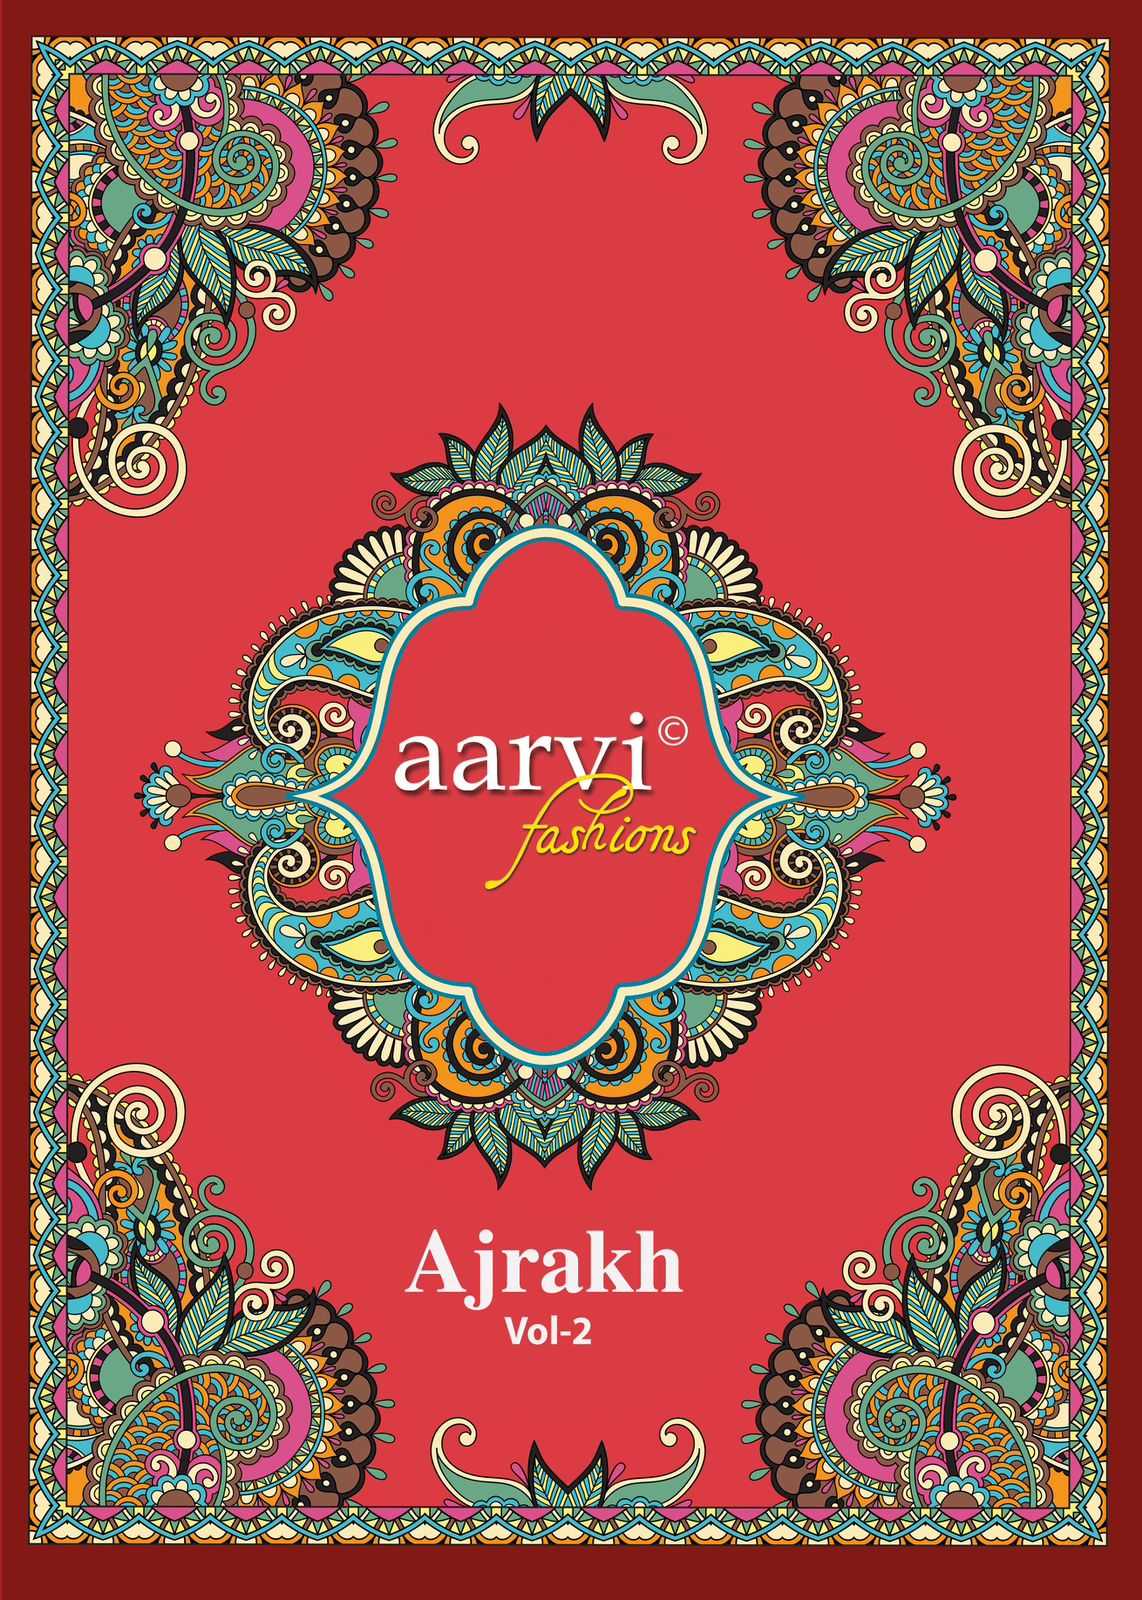 aarvi fashion ajrakh vol 2 fullstitch comfy wear cotton ladies suits